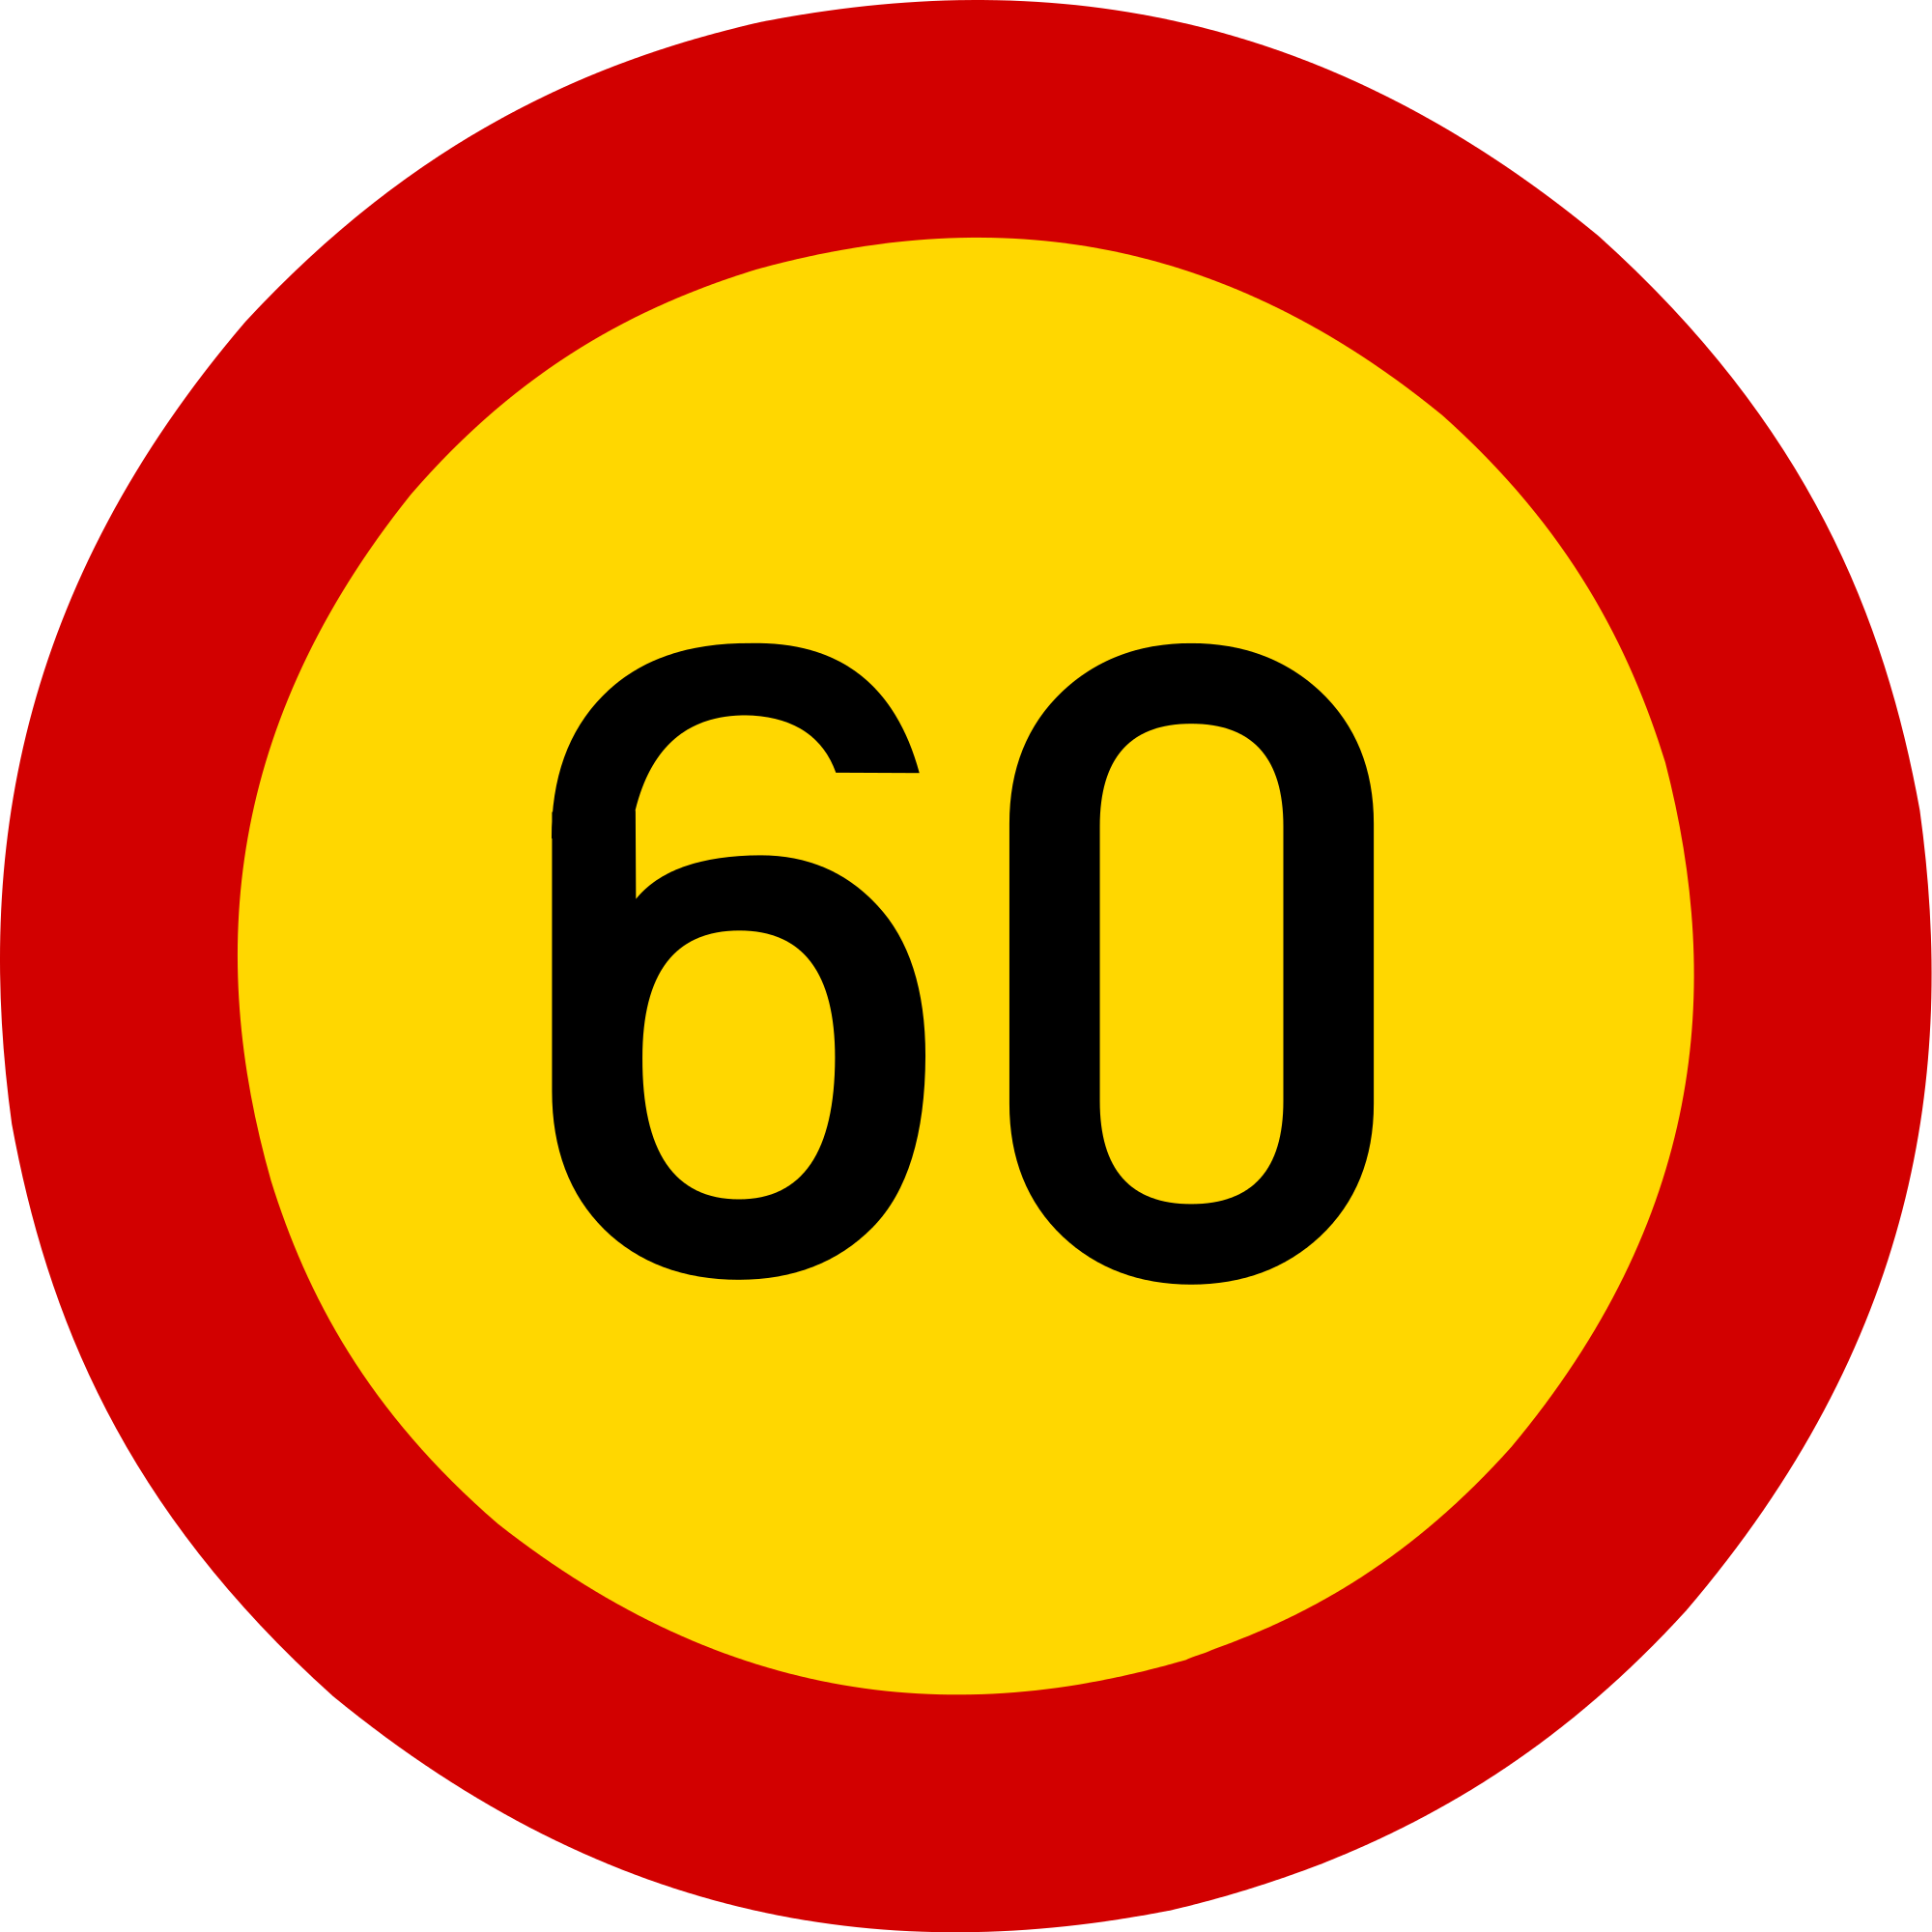 60 руб в час. Дорожный знак 60. Знак скорость 60 км. Знак ограничение 60. Дорожный знак 60 в Красном круге.